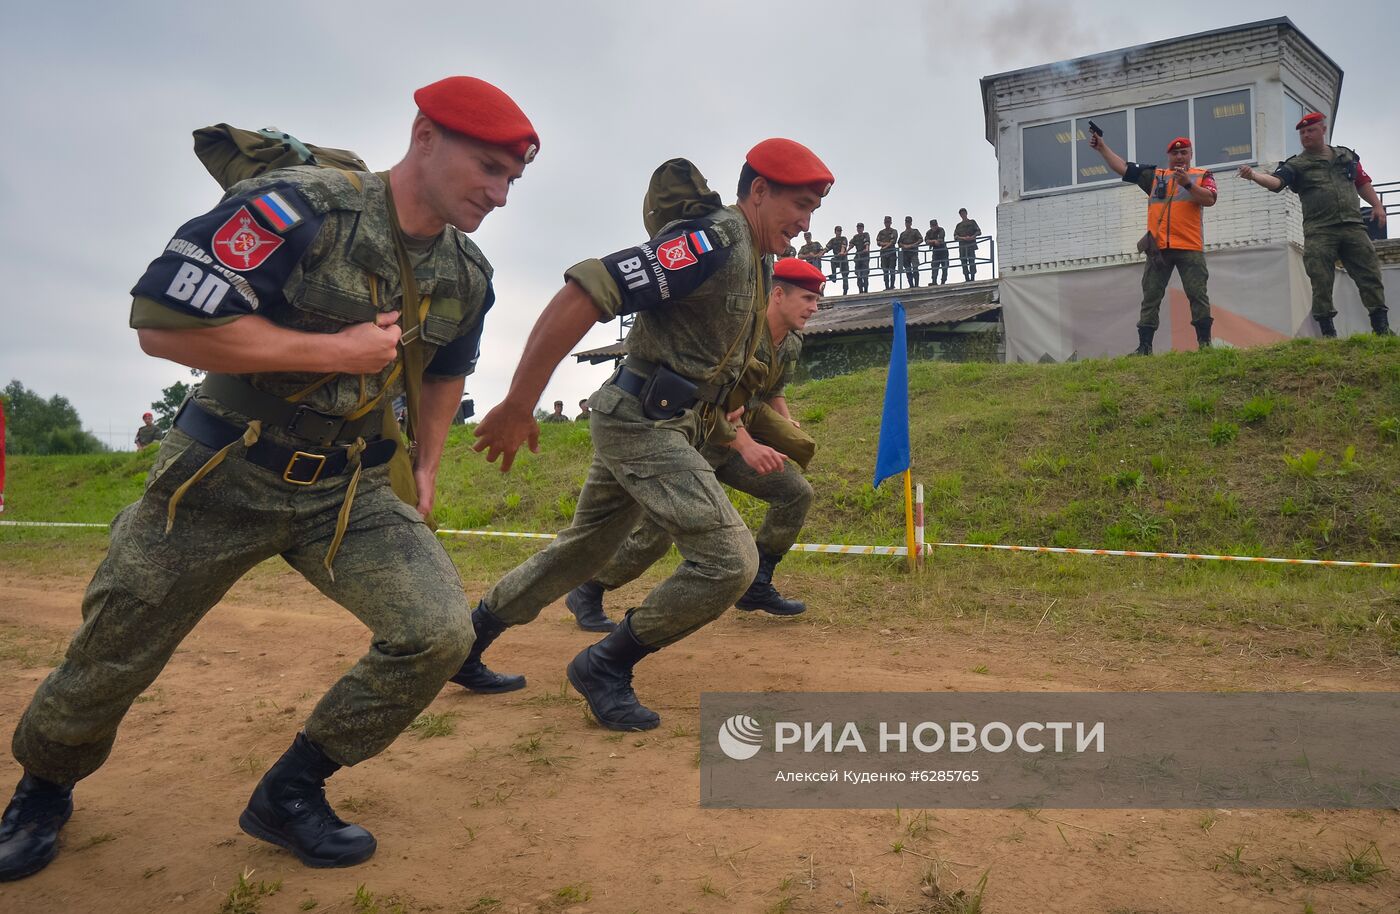 Всеармейский этап конкурса военной полиции "Страж порядка"